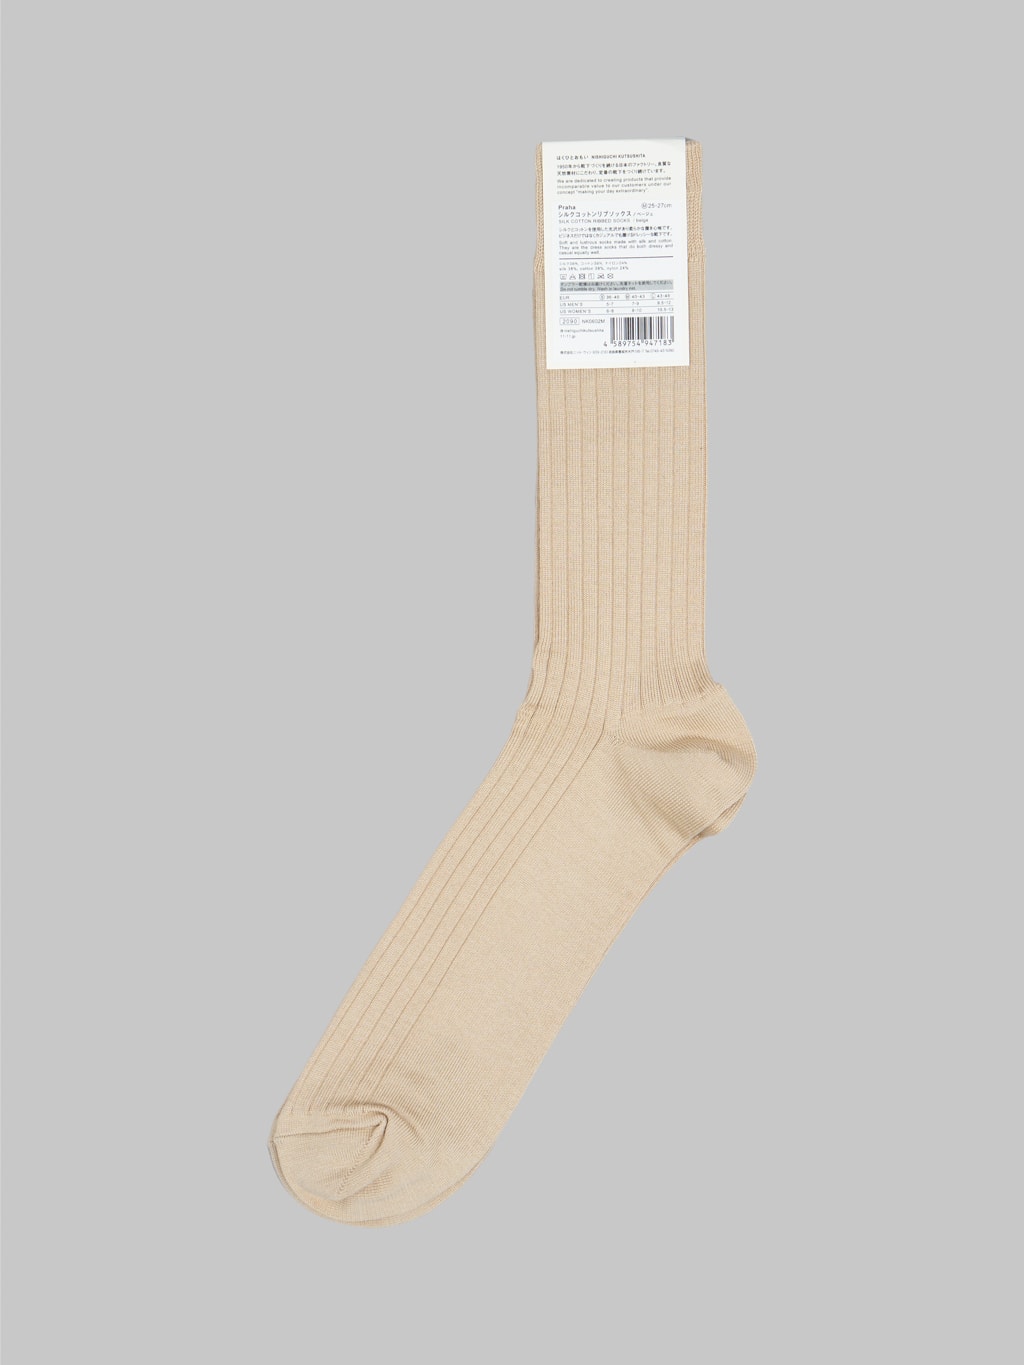 Nishiguchi Kutsushita Silk Cotton Ribbed Socks Beige